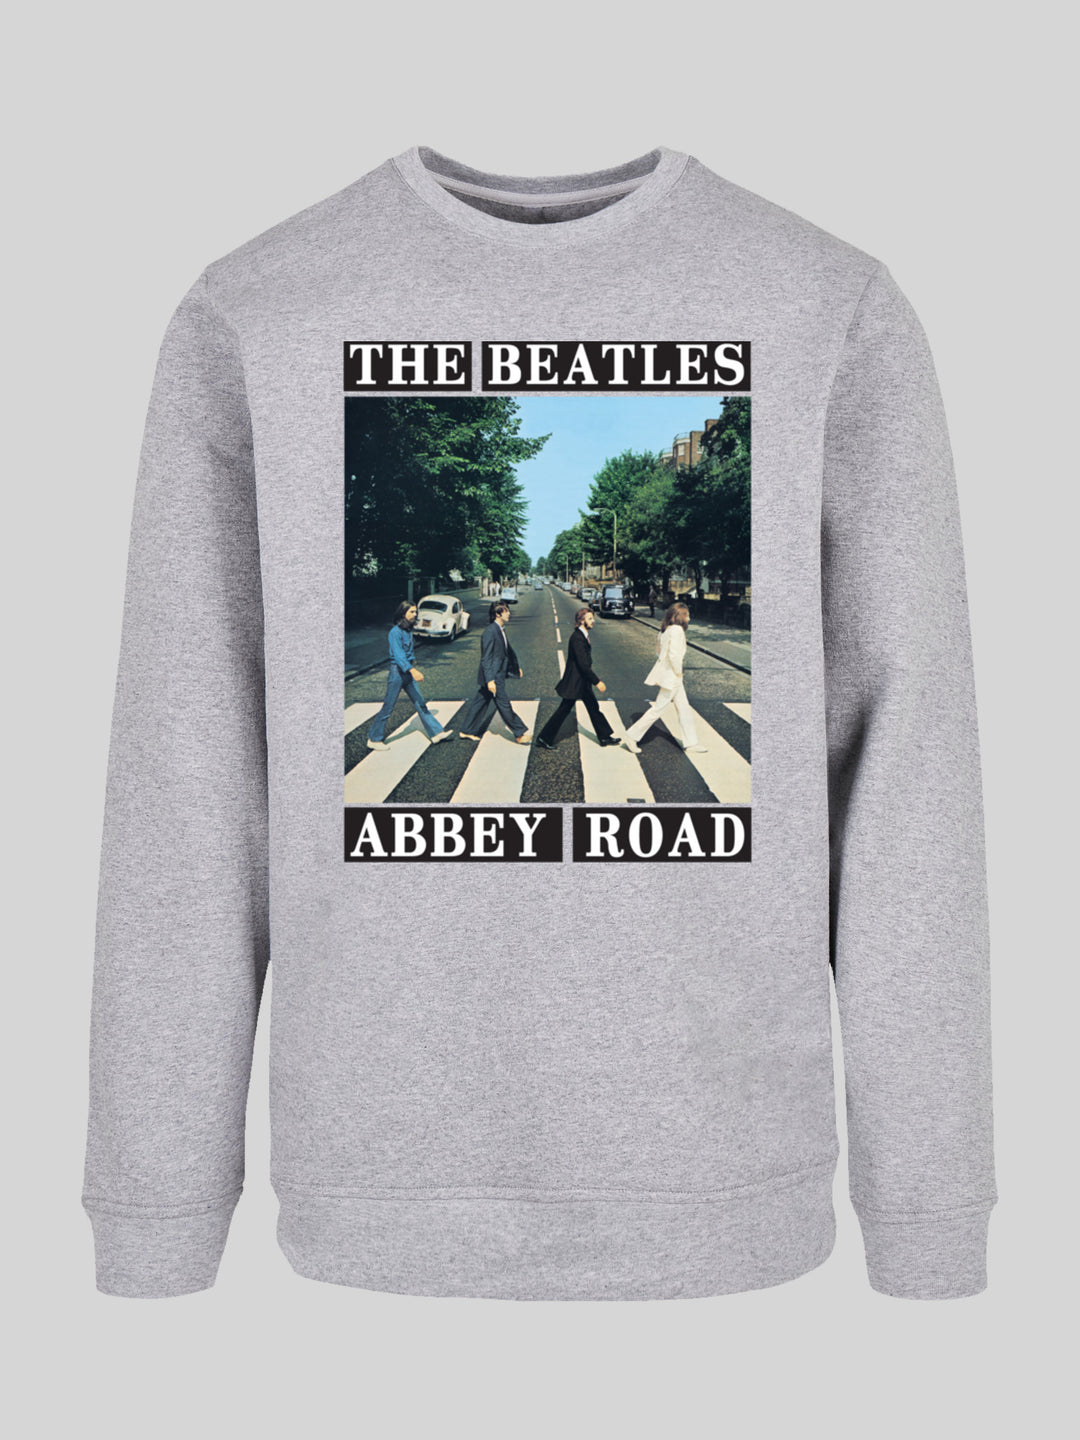 The Beatles Sweatshirt | Abbey Road Sweater Longsleeve F4NT4STIC – Men 